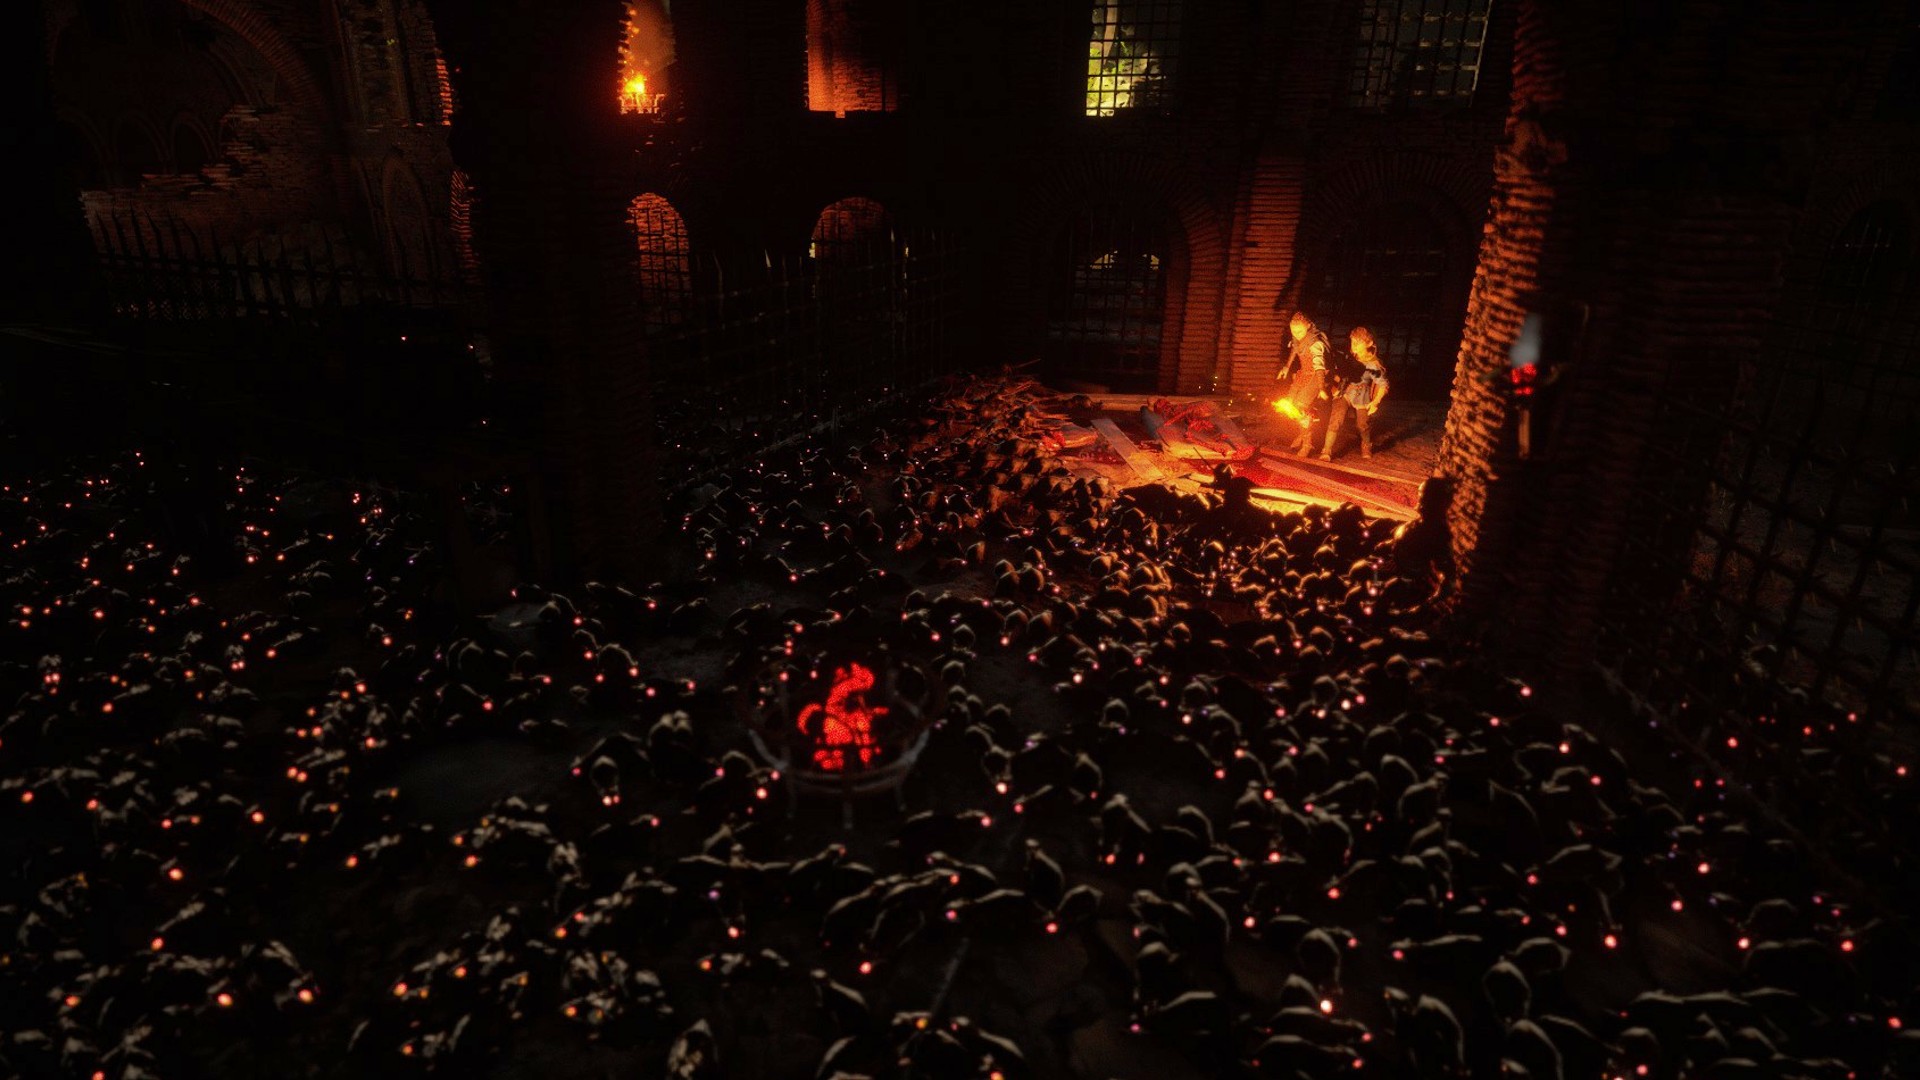 A Plague Tale: Requiem Review - NOT THE RATS!